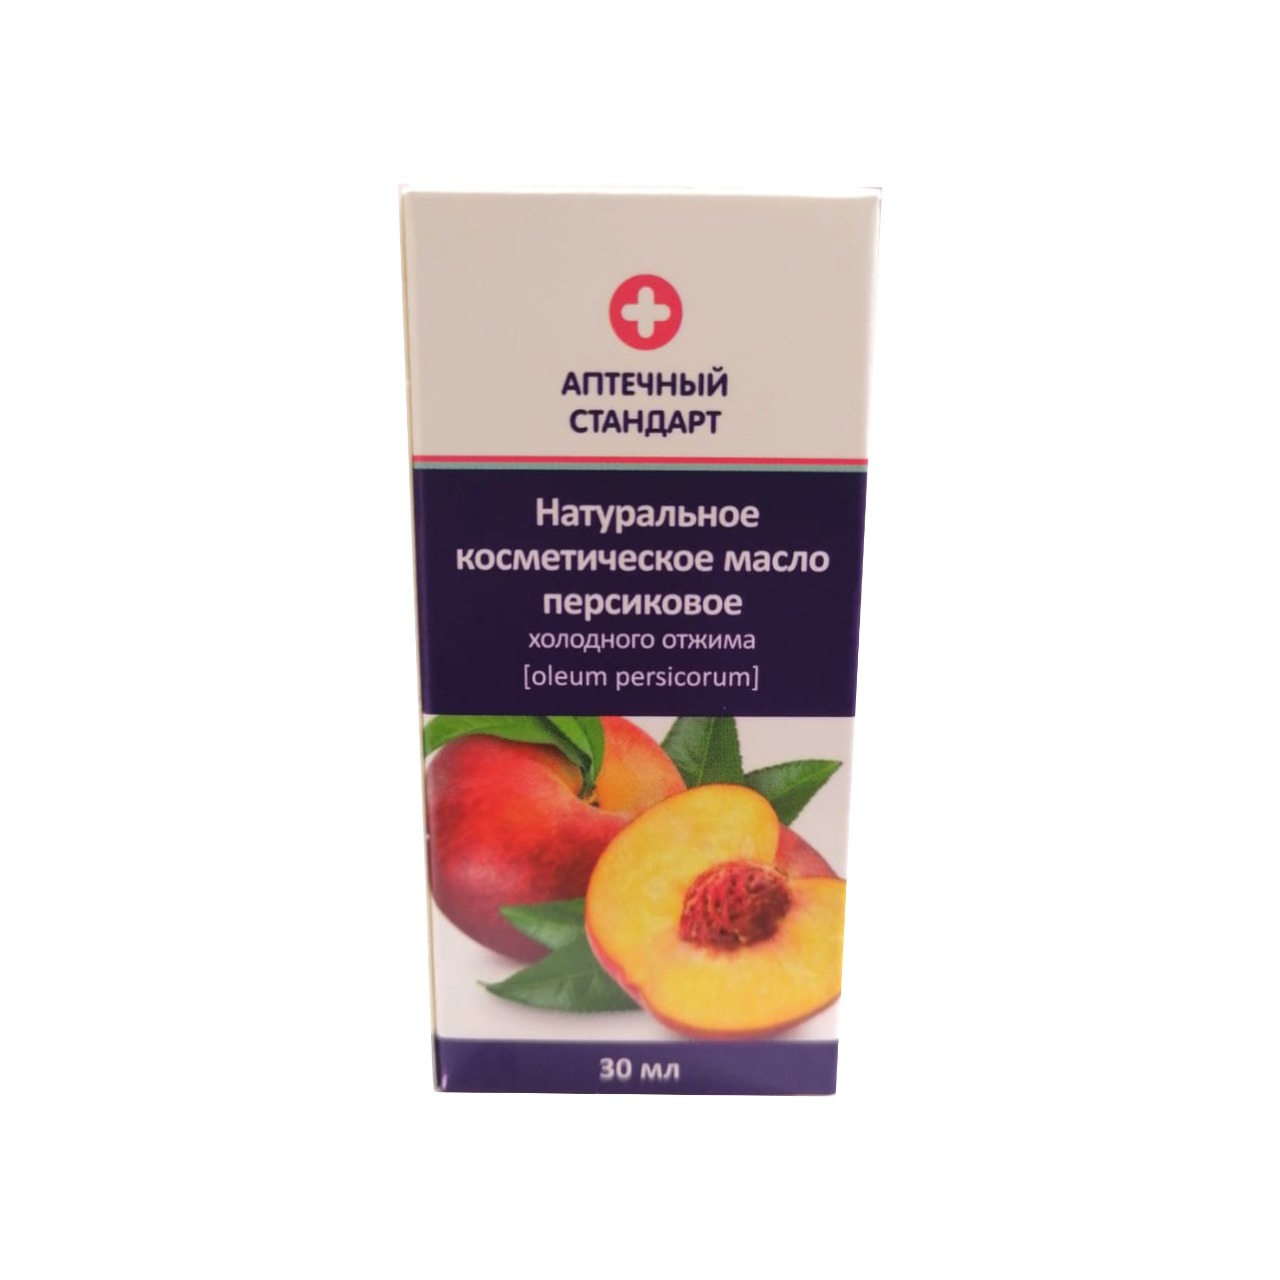 Аптечный стандарт масло персиковое натуральное косметическое 30мл